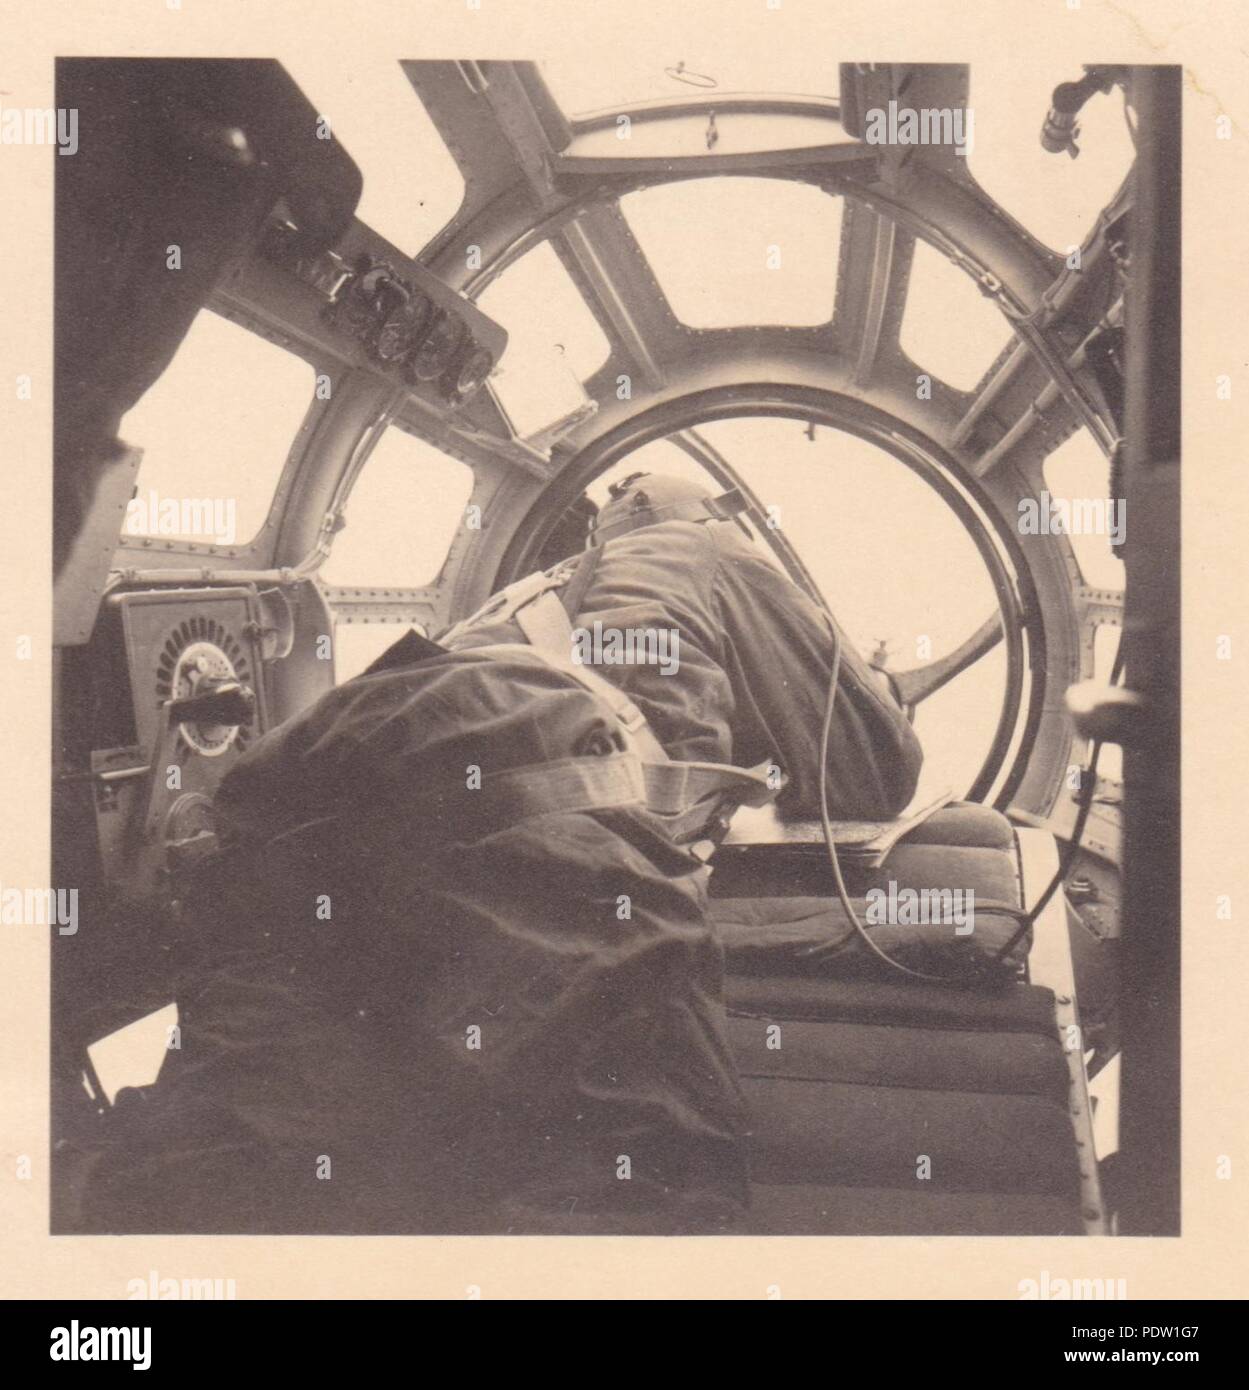 Bild aus dem Fotoalbum von Oberfeldwebel Karl gendner von 1. Staffel, Kampfgeschwader 40: Karl Gendner des Beobachters, mans seine Position in einer Heinkel He 111 E-1 der 8./KG 355 während der Deutschen Einstieg in das Sudetenland im Oktober 1938. Stockfoto